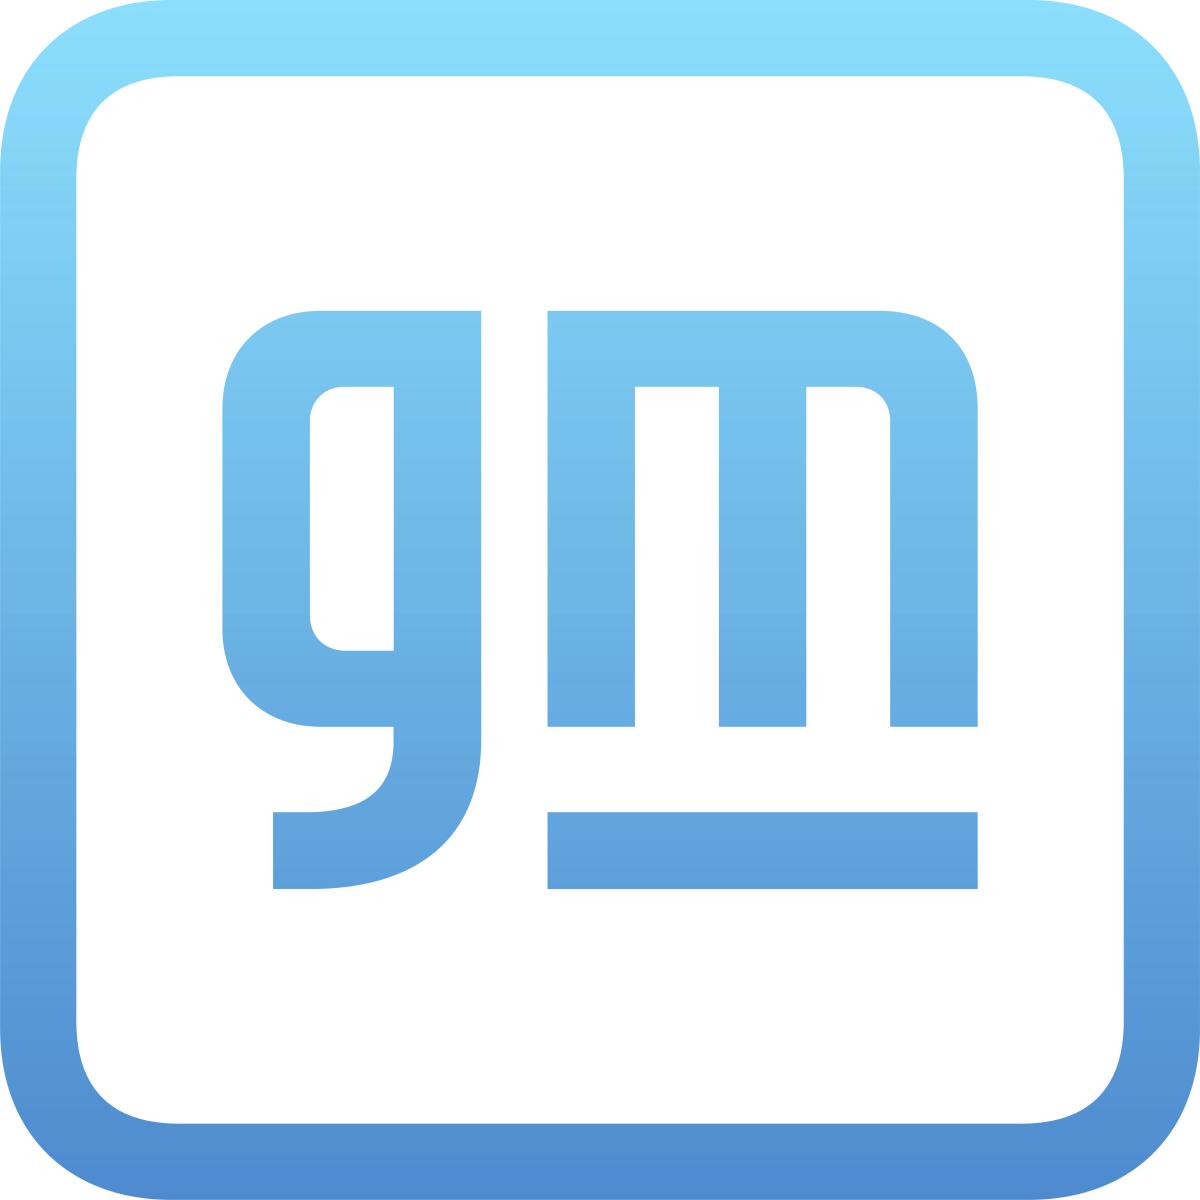 Esta imagen proveída por General Motors muestra el logo de GM. (General Motors vía AP)